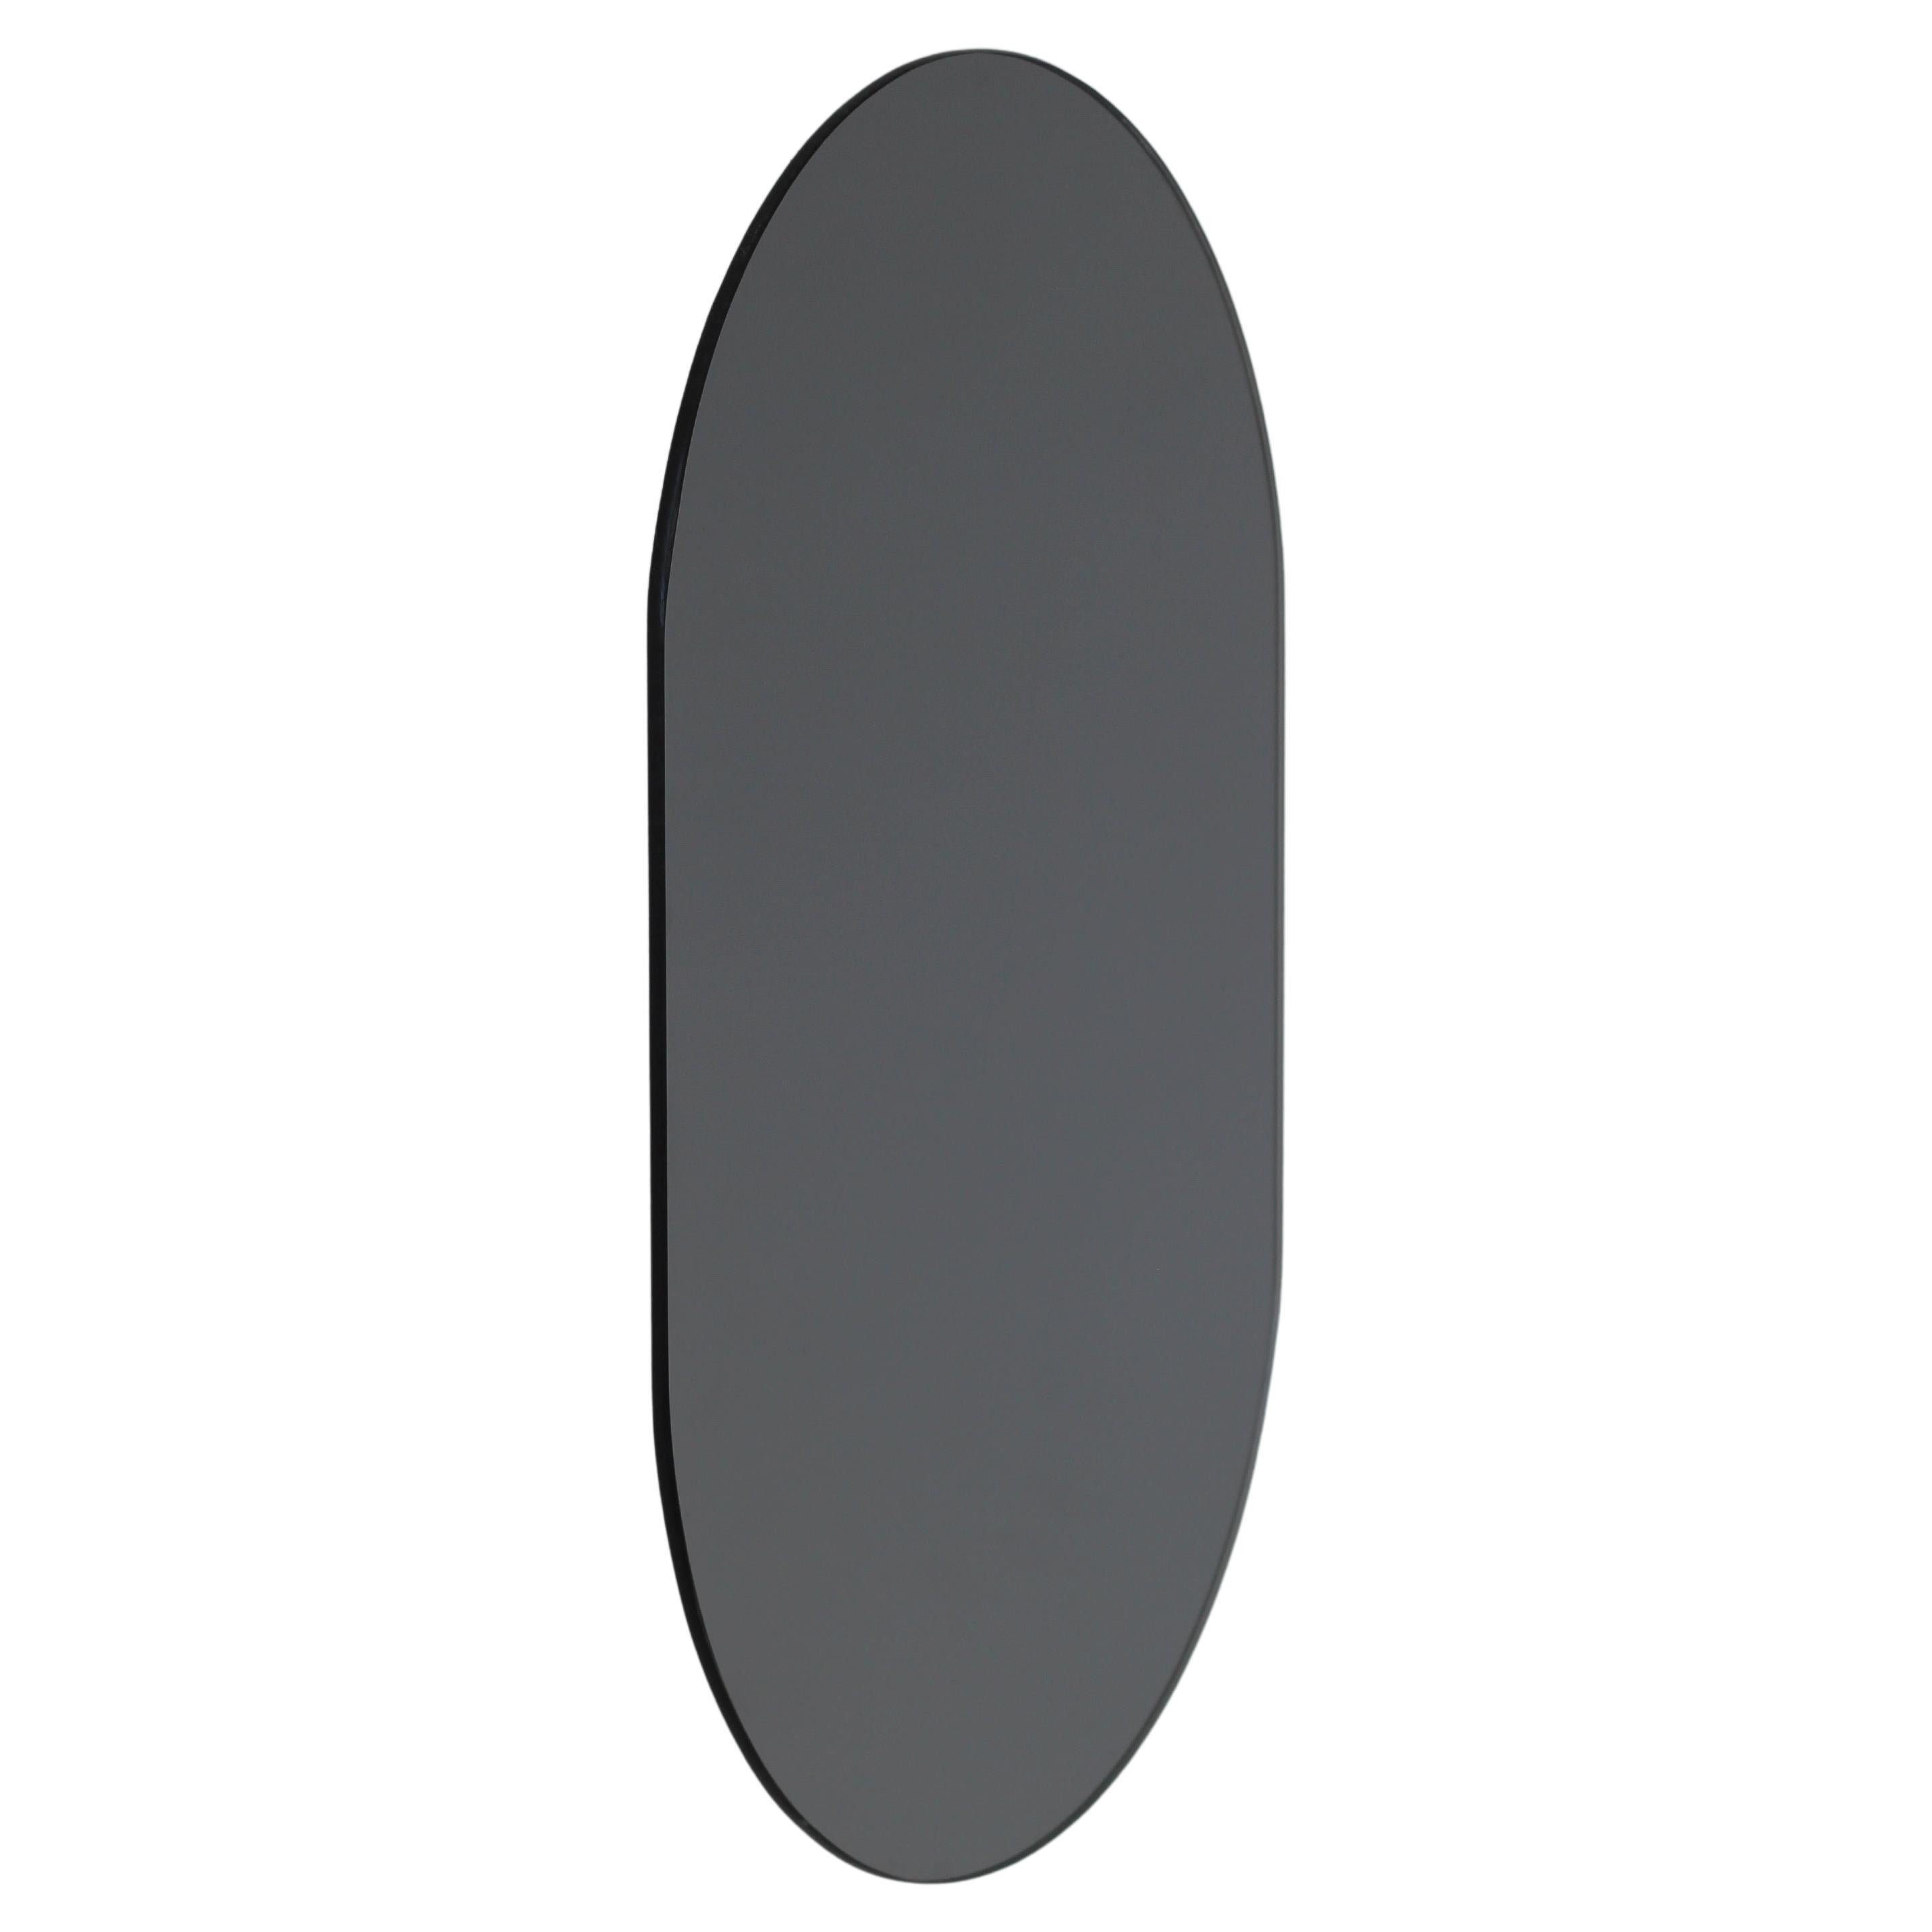 Capsula Miroir sans cadre contemporain teinté noir en forme de capsule, petit